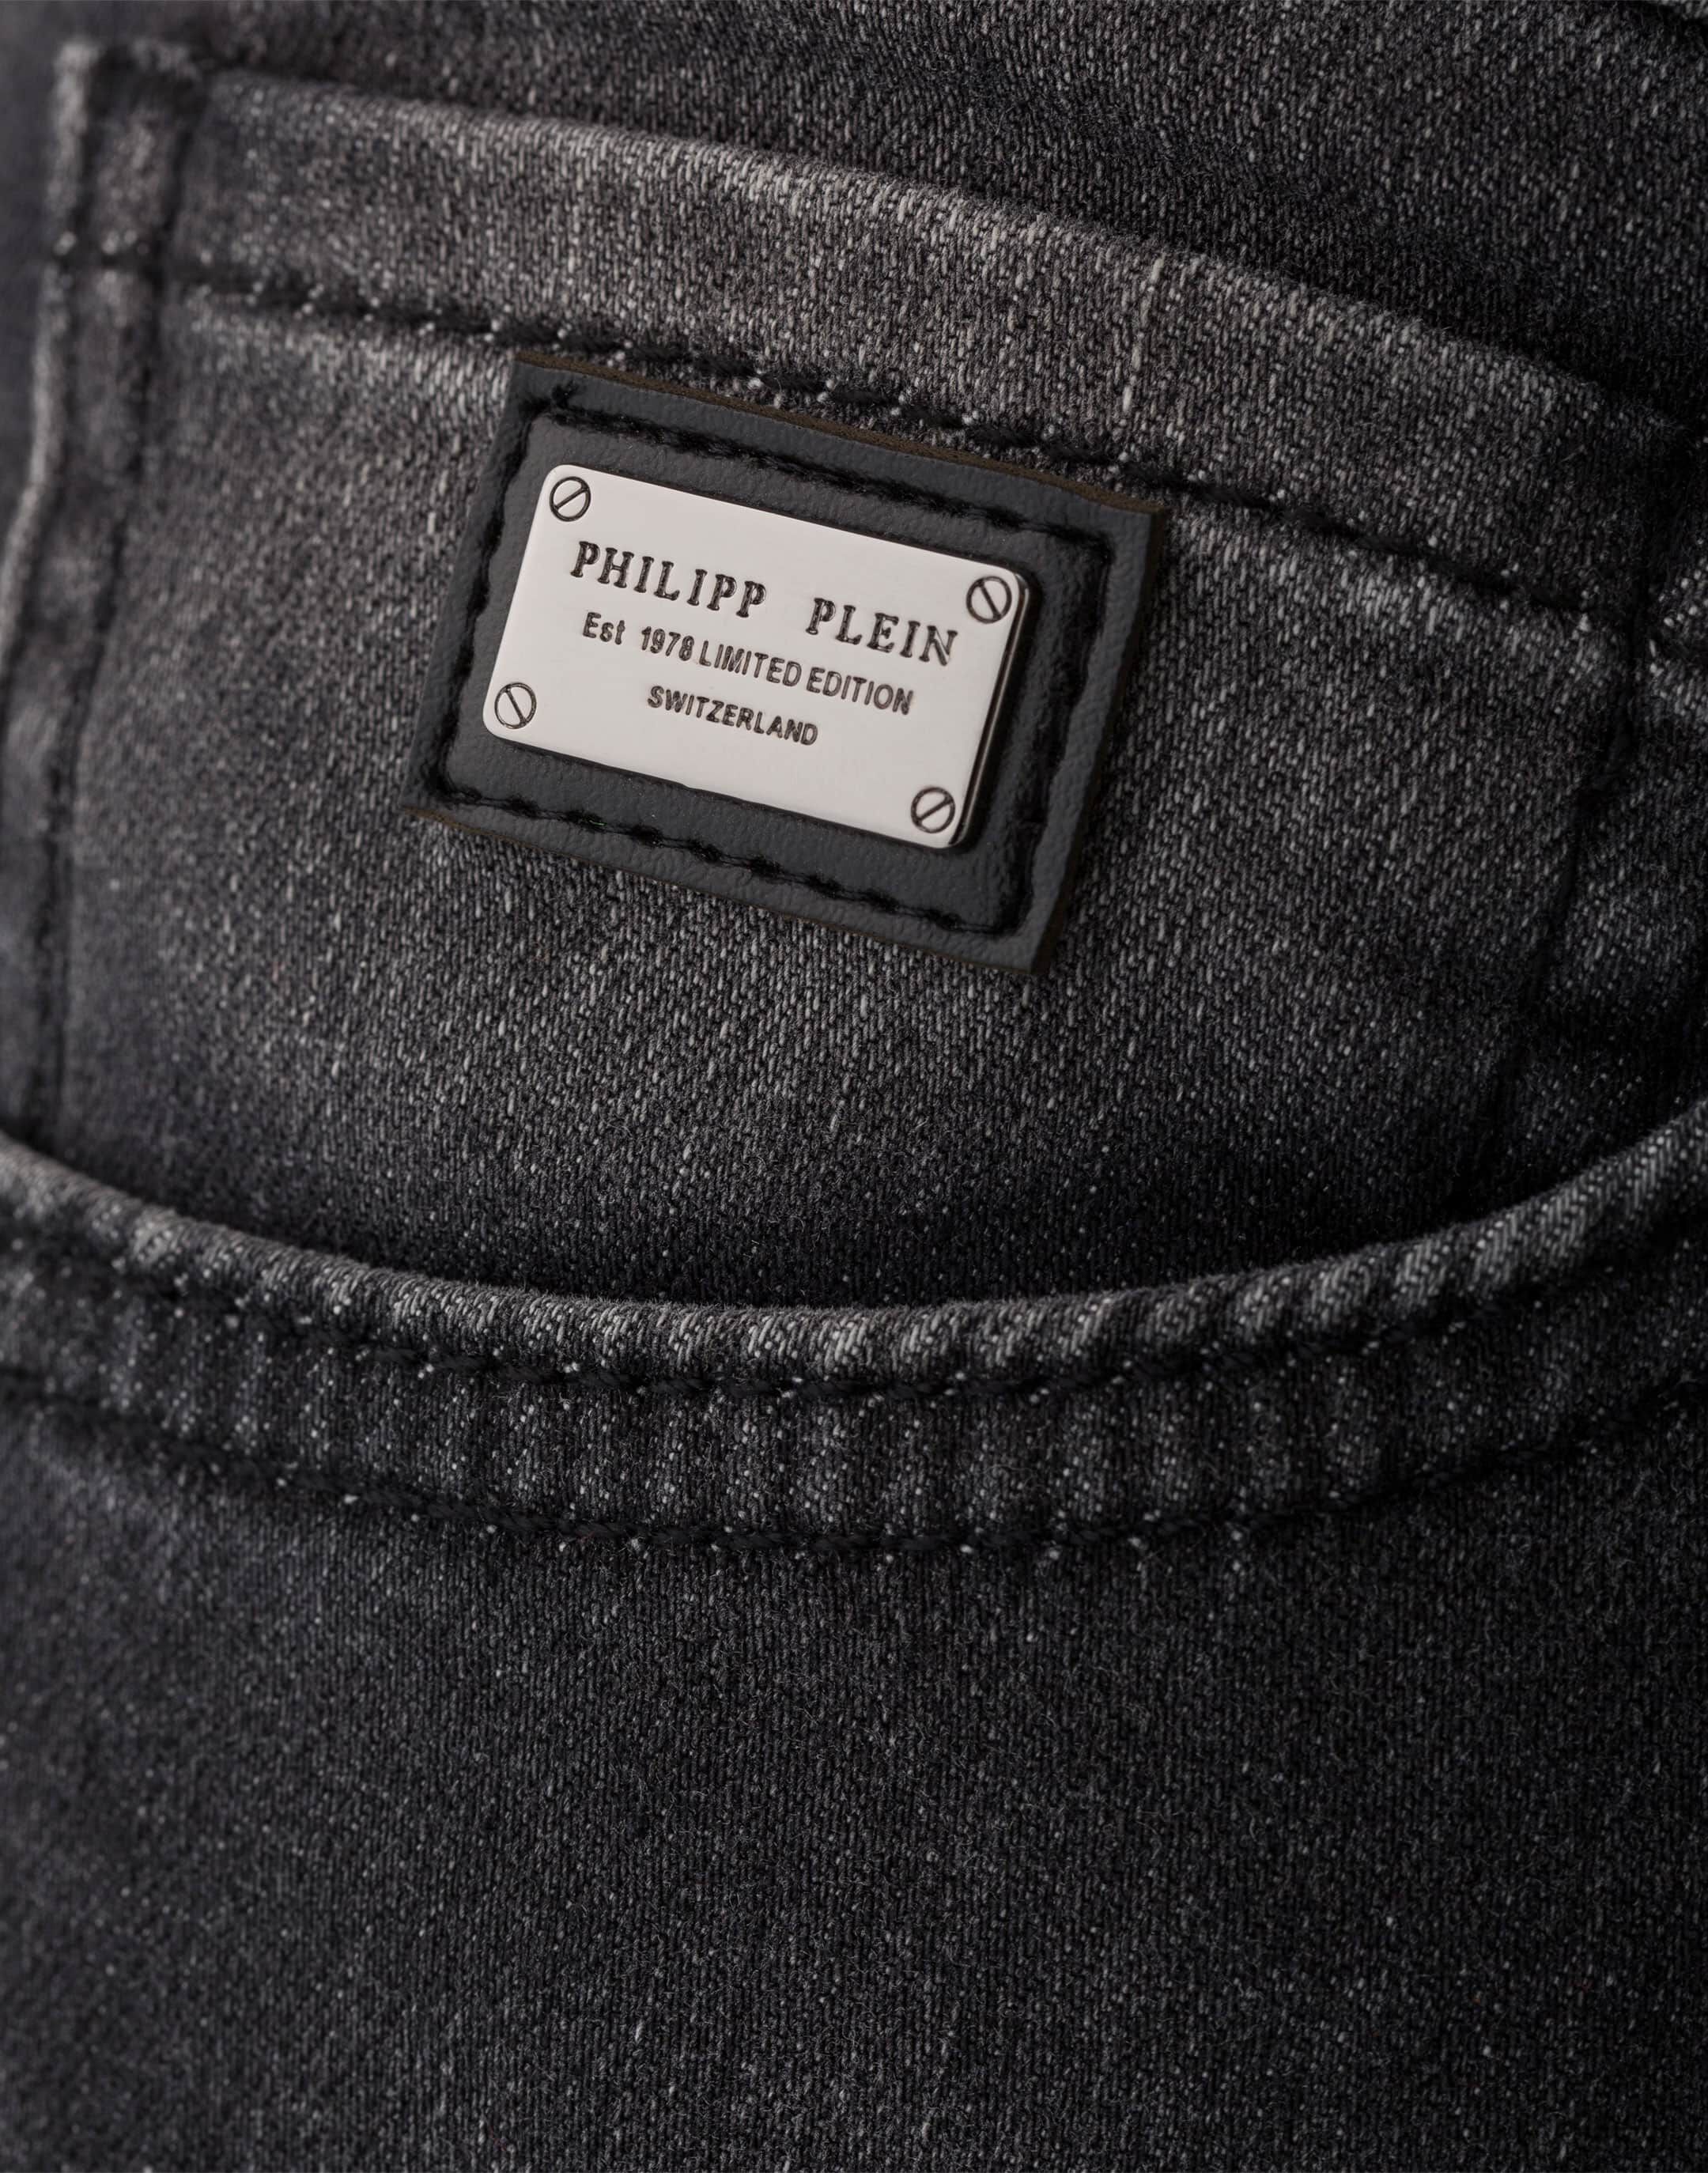 philipp plein est 1978 limited edition switzerland jacket